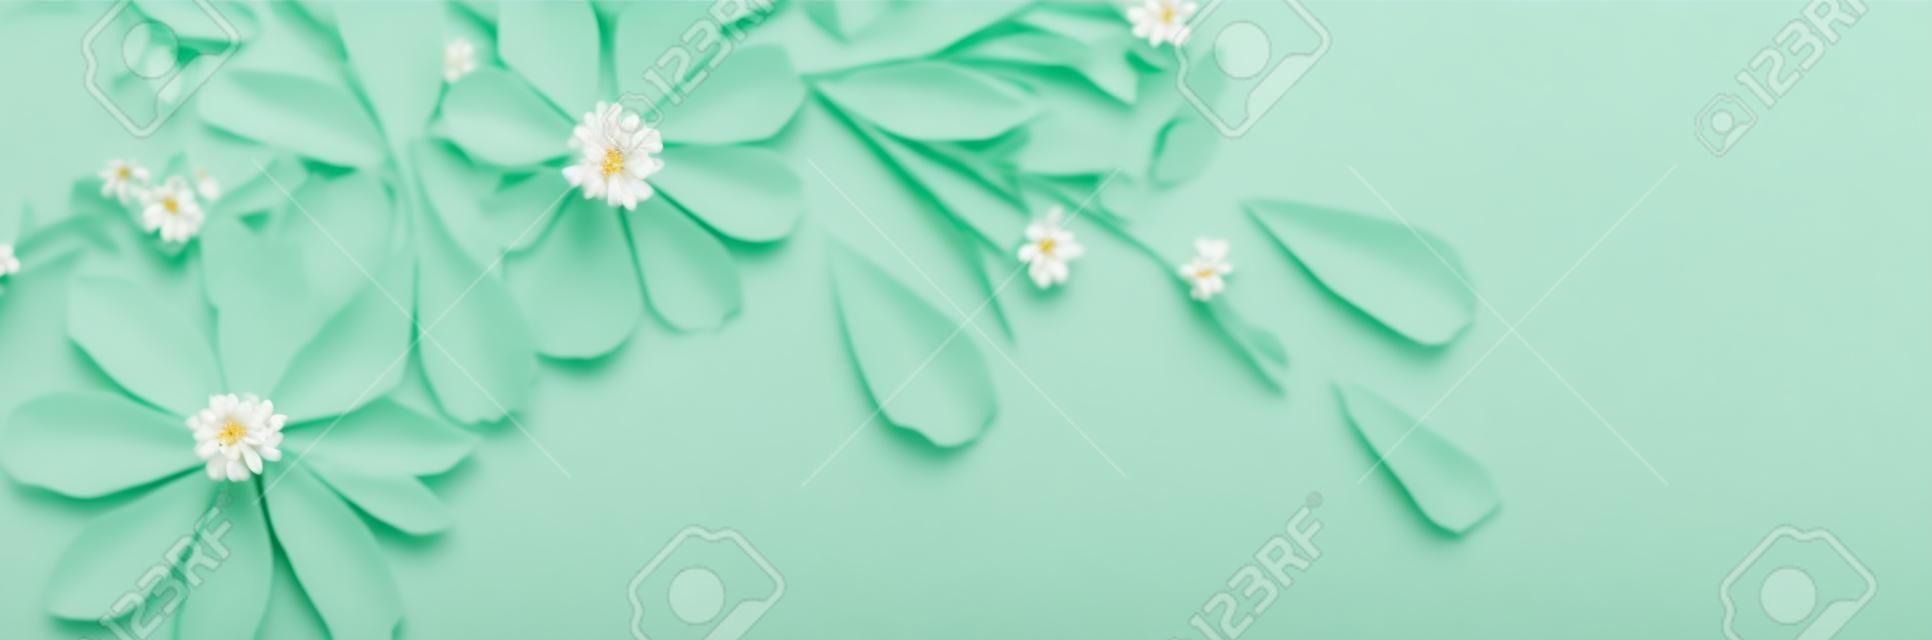 flores brancas no fundo de papel verde